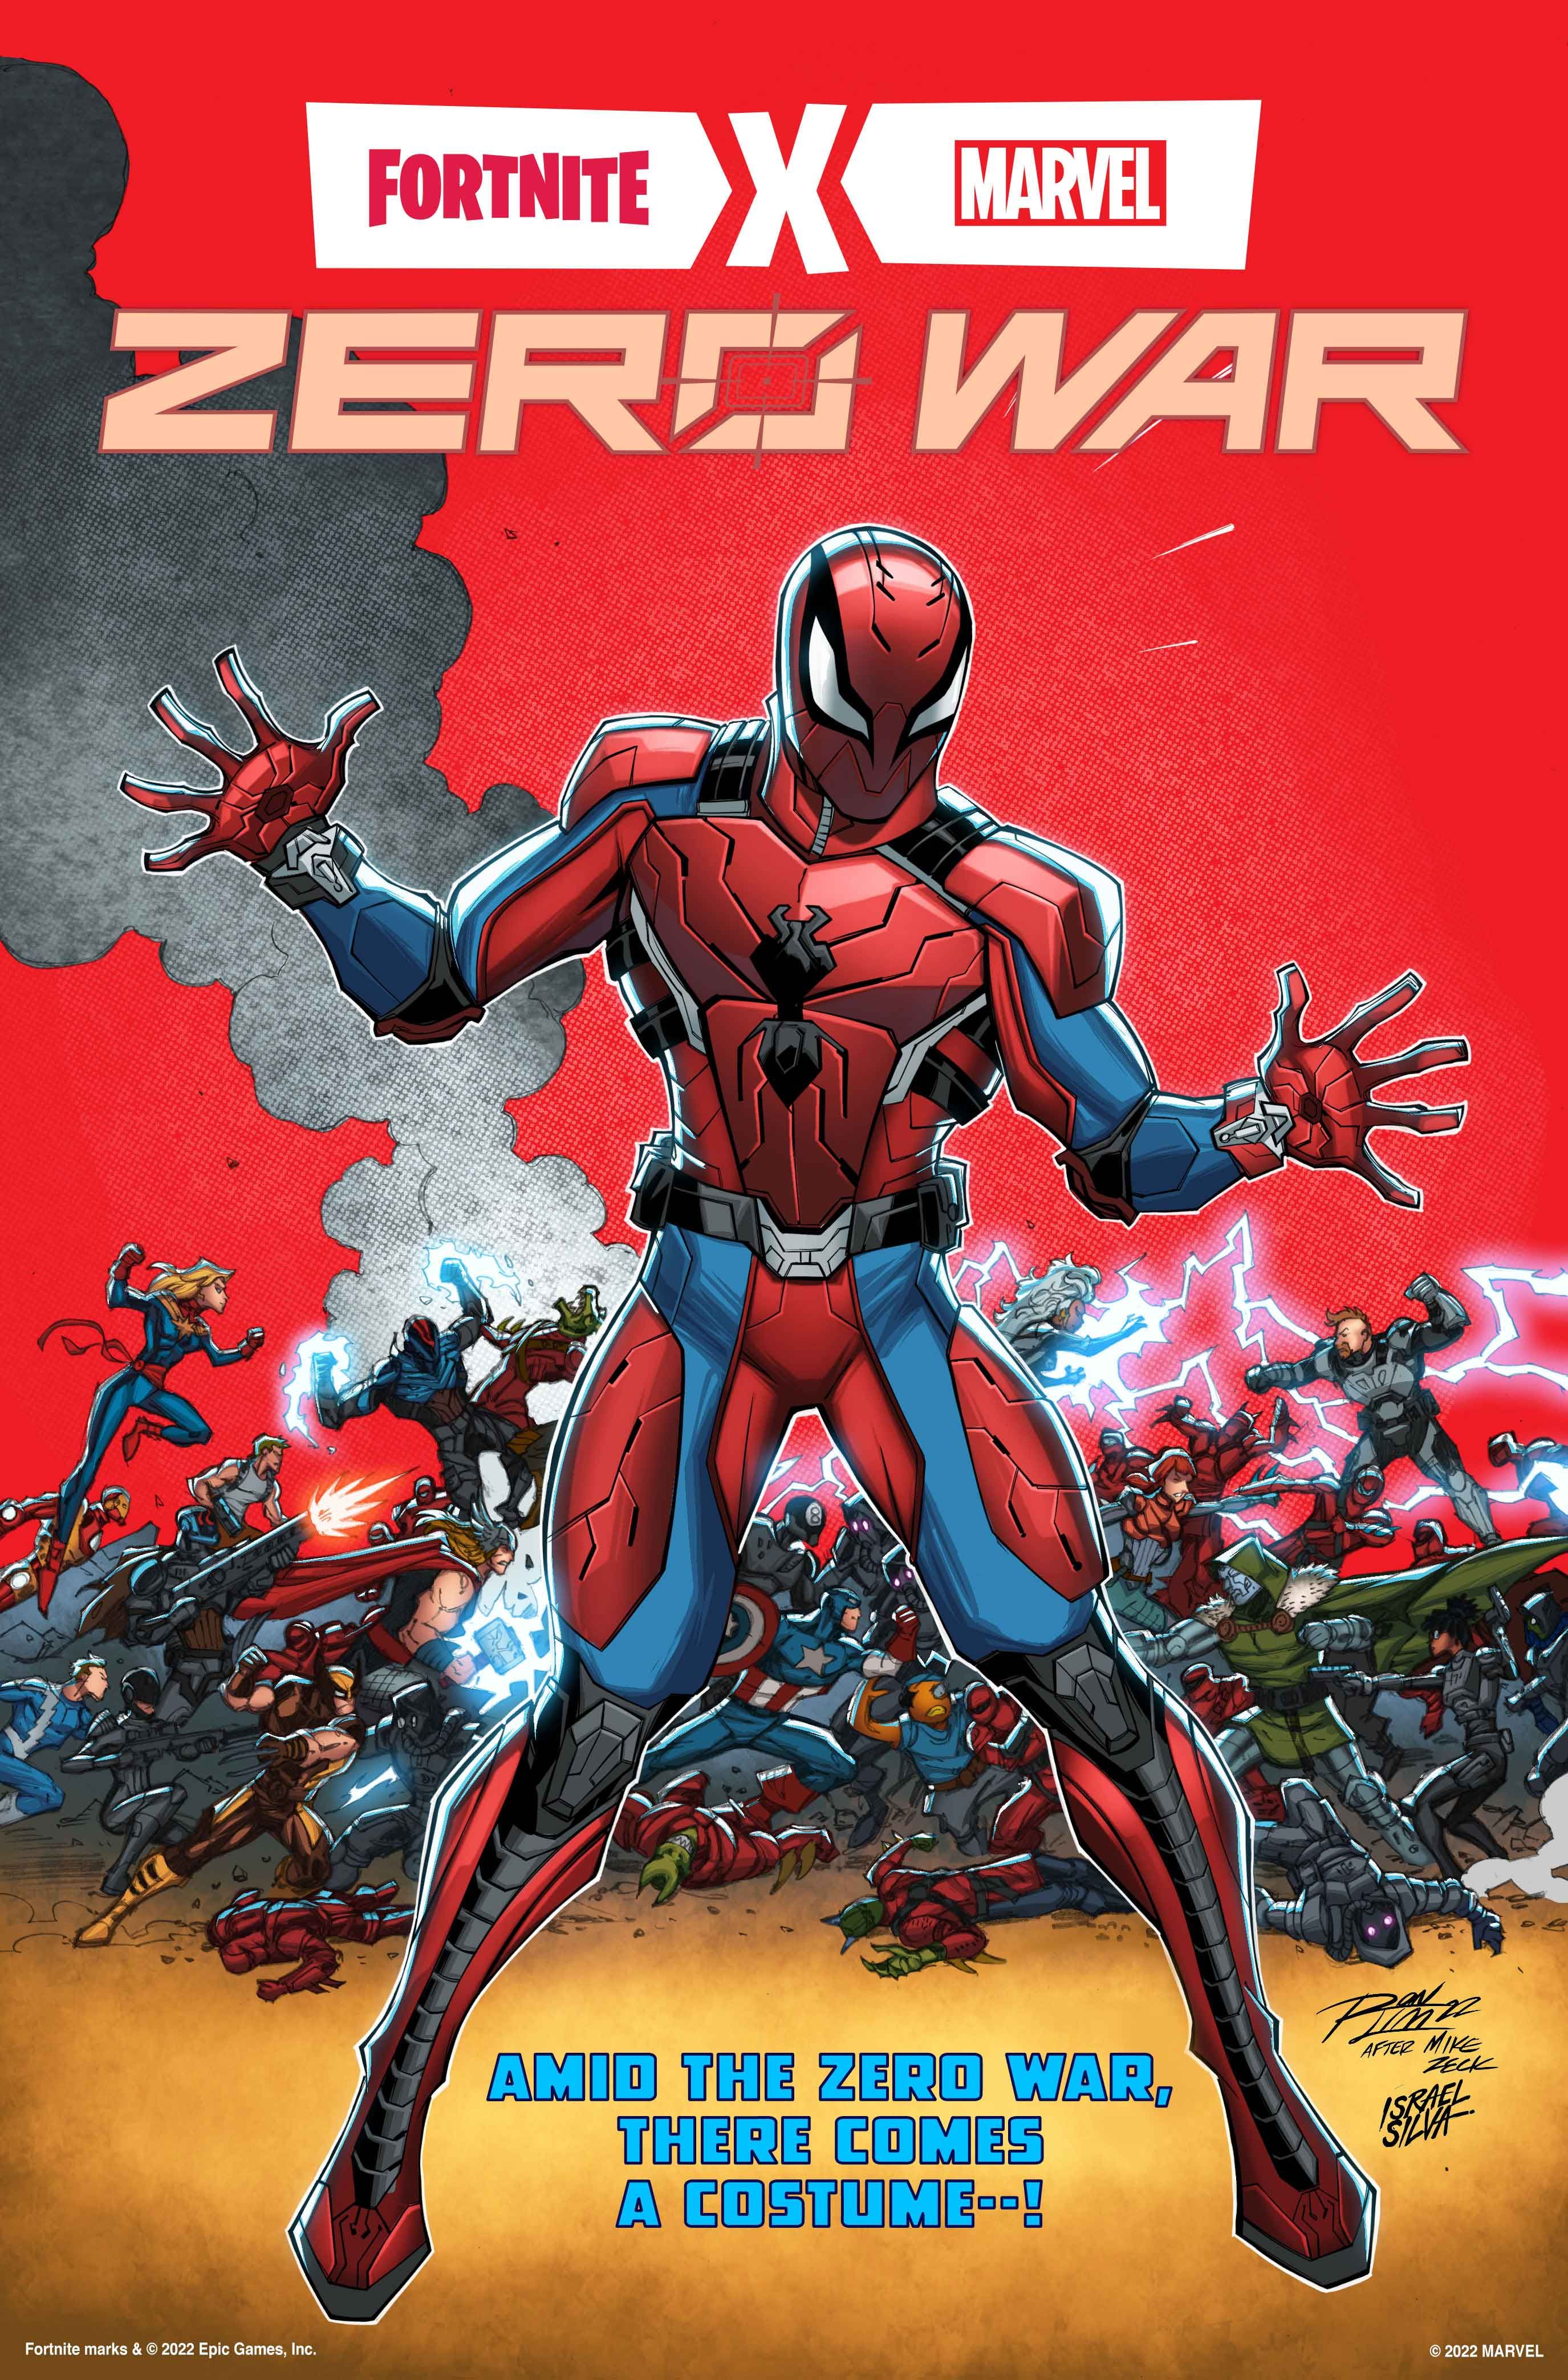 Spider-Man’s New Fortnite Suit Revealed In Secret Wars Homage Art